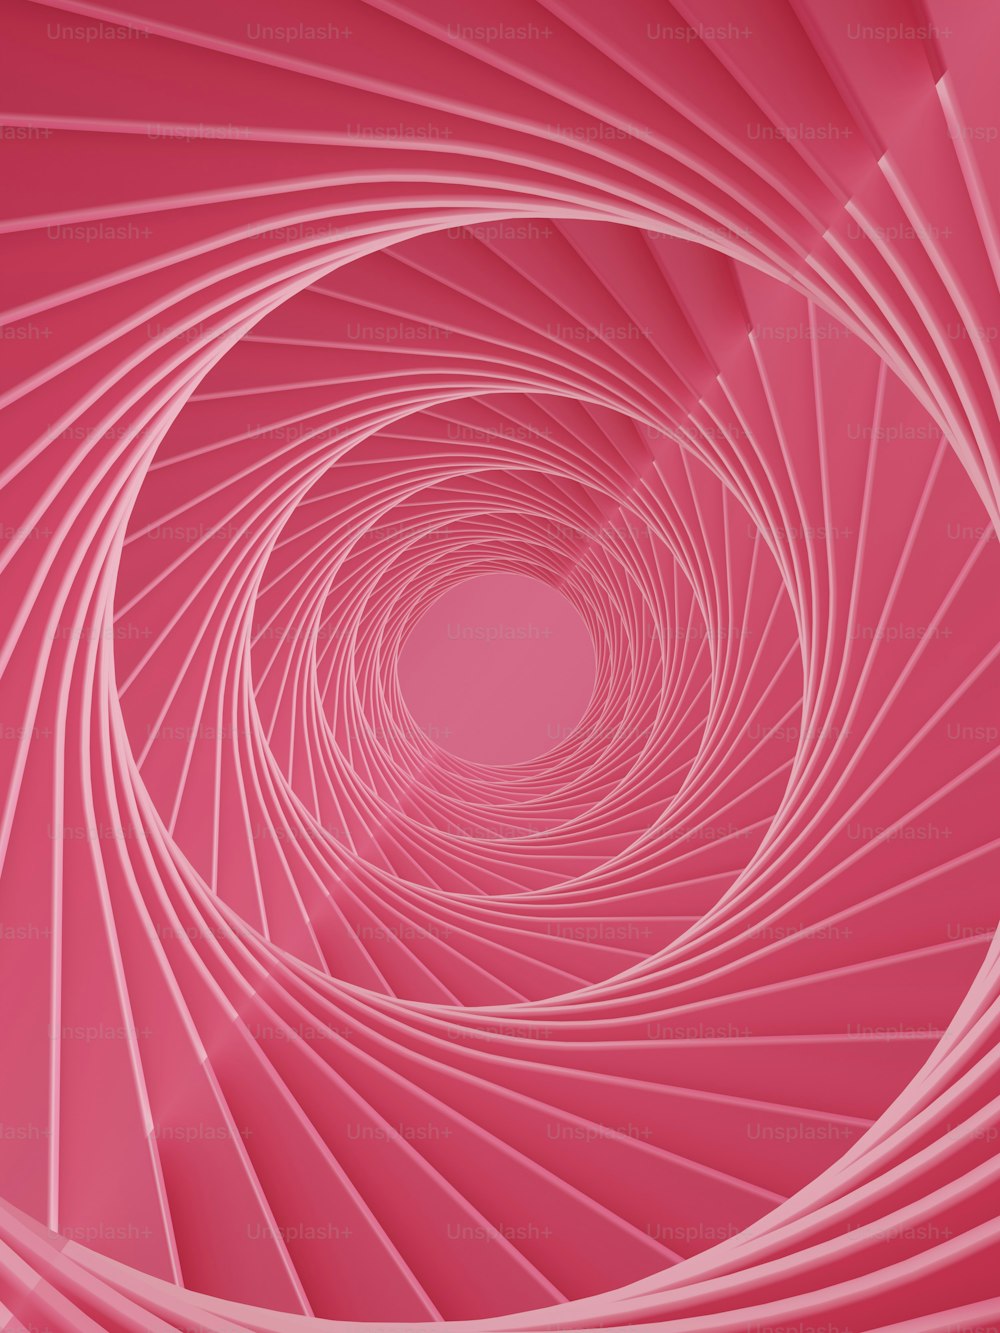 uno sfondo rosa con un disegno a spirale al centro